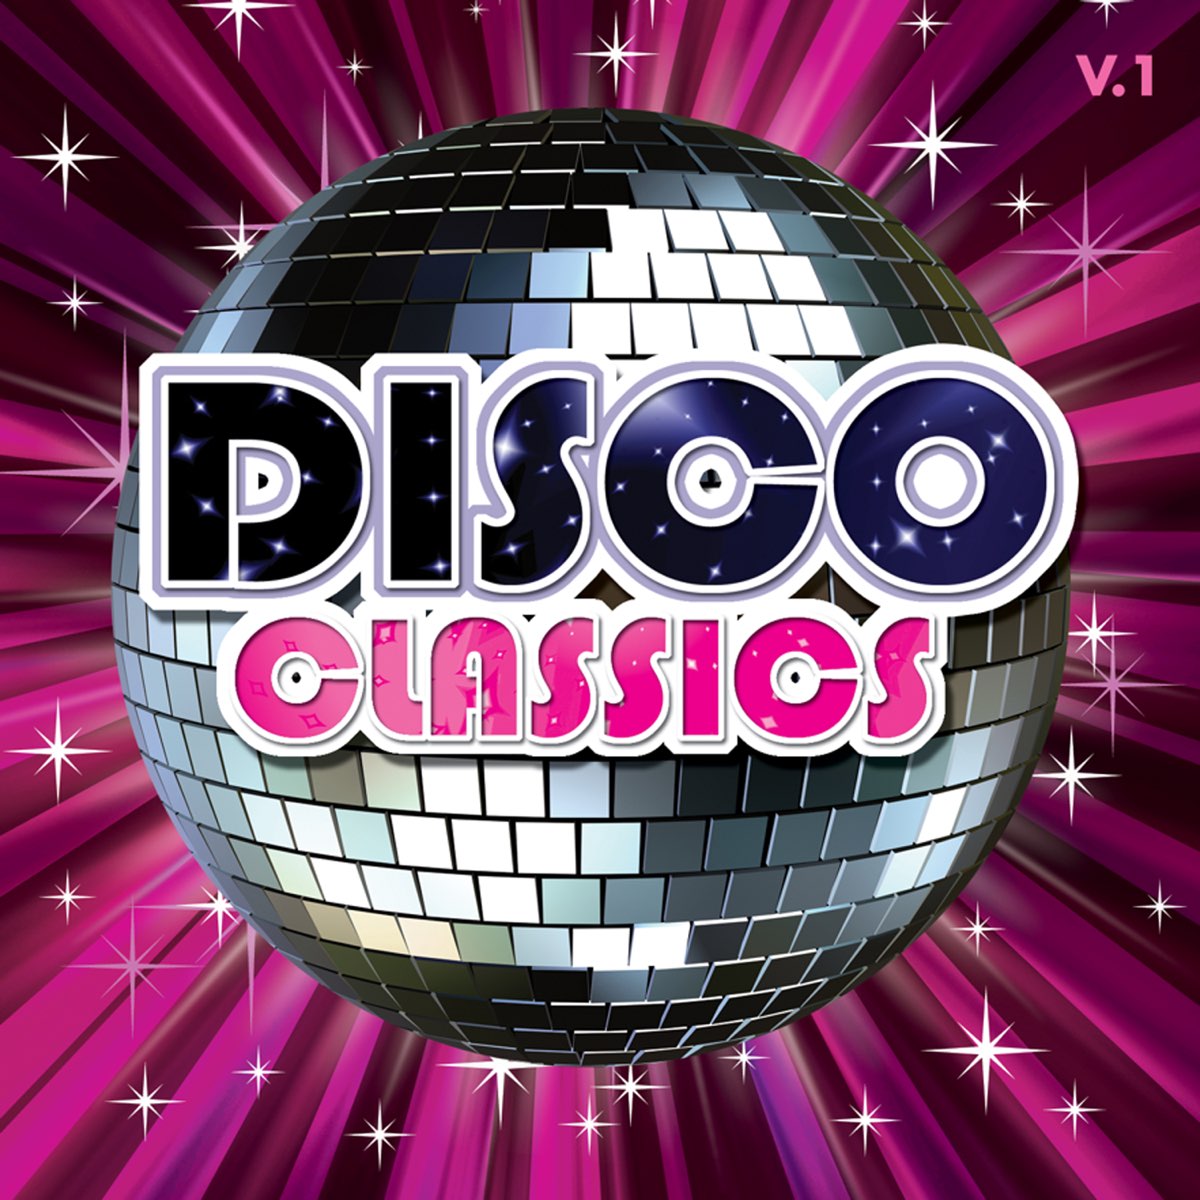 Disco music 80. Диско. Музыкальный стиль диско. Надпись в стиле диско. Плакат в стиле диско.